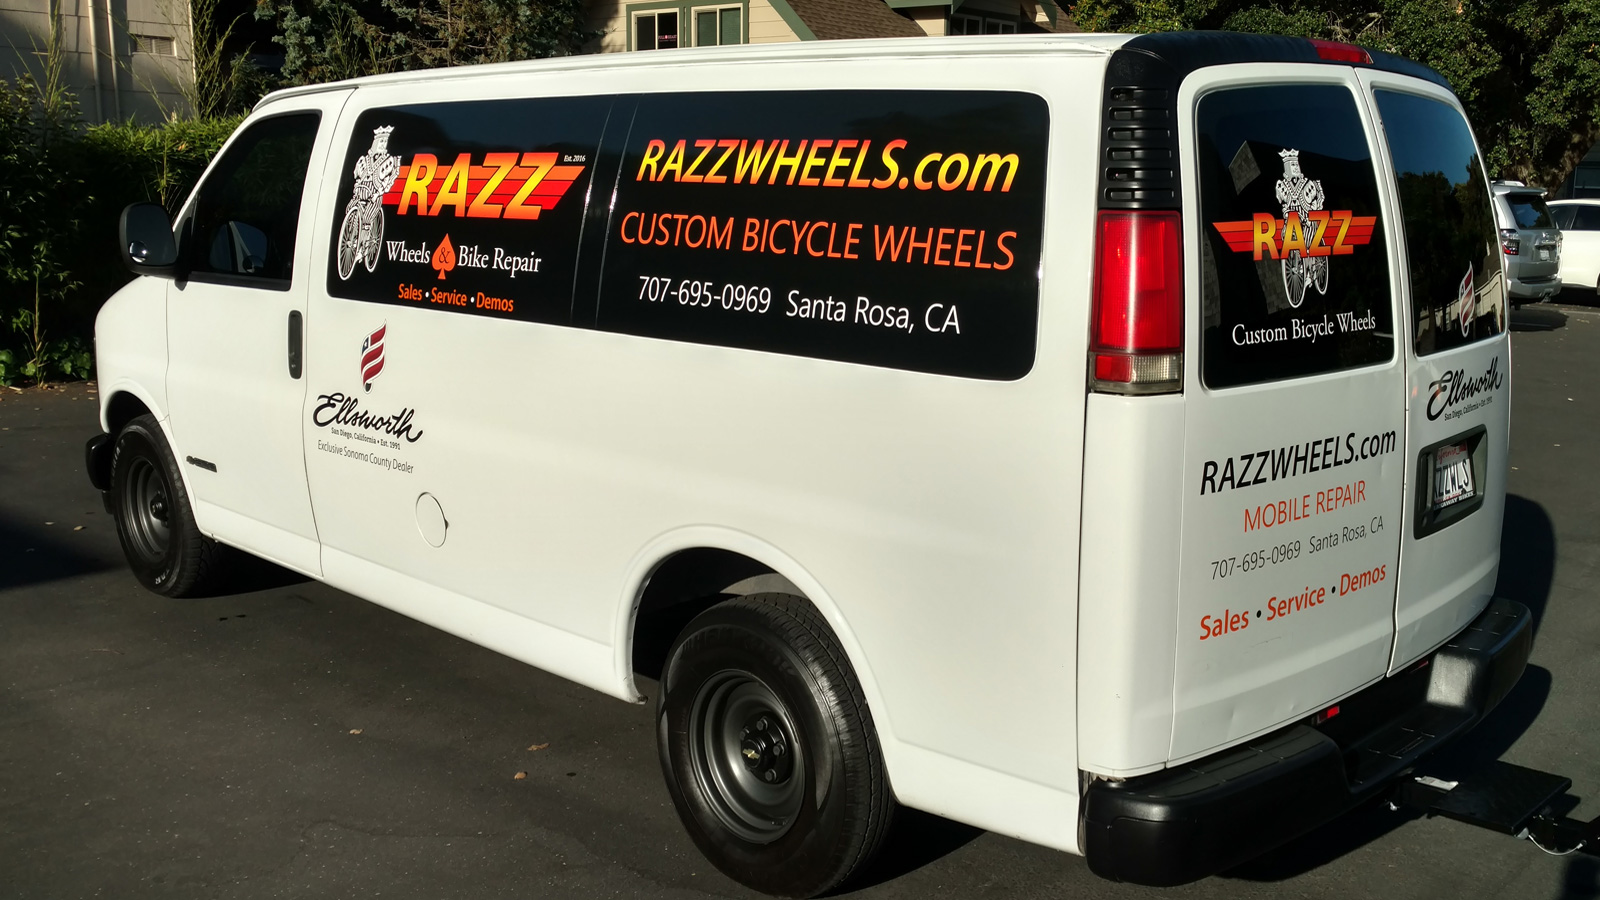 Mobile bike repair in Santa Rosa, CA